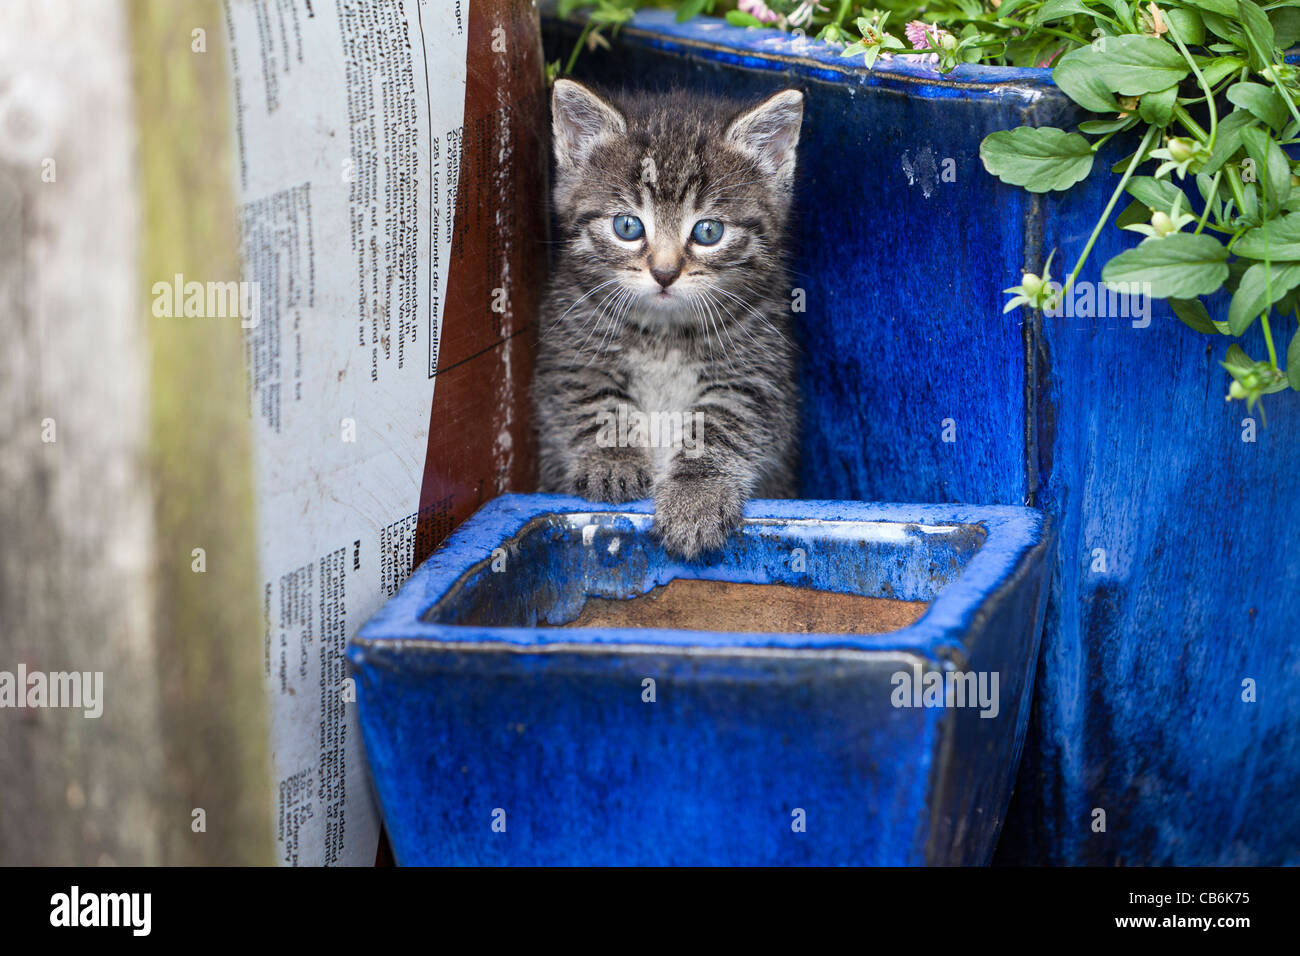 Kitten, between plant pots in garden, Lower Saxony, Germany Stock Photo